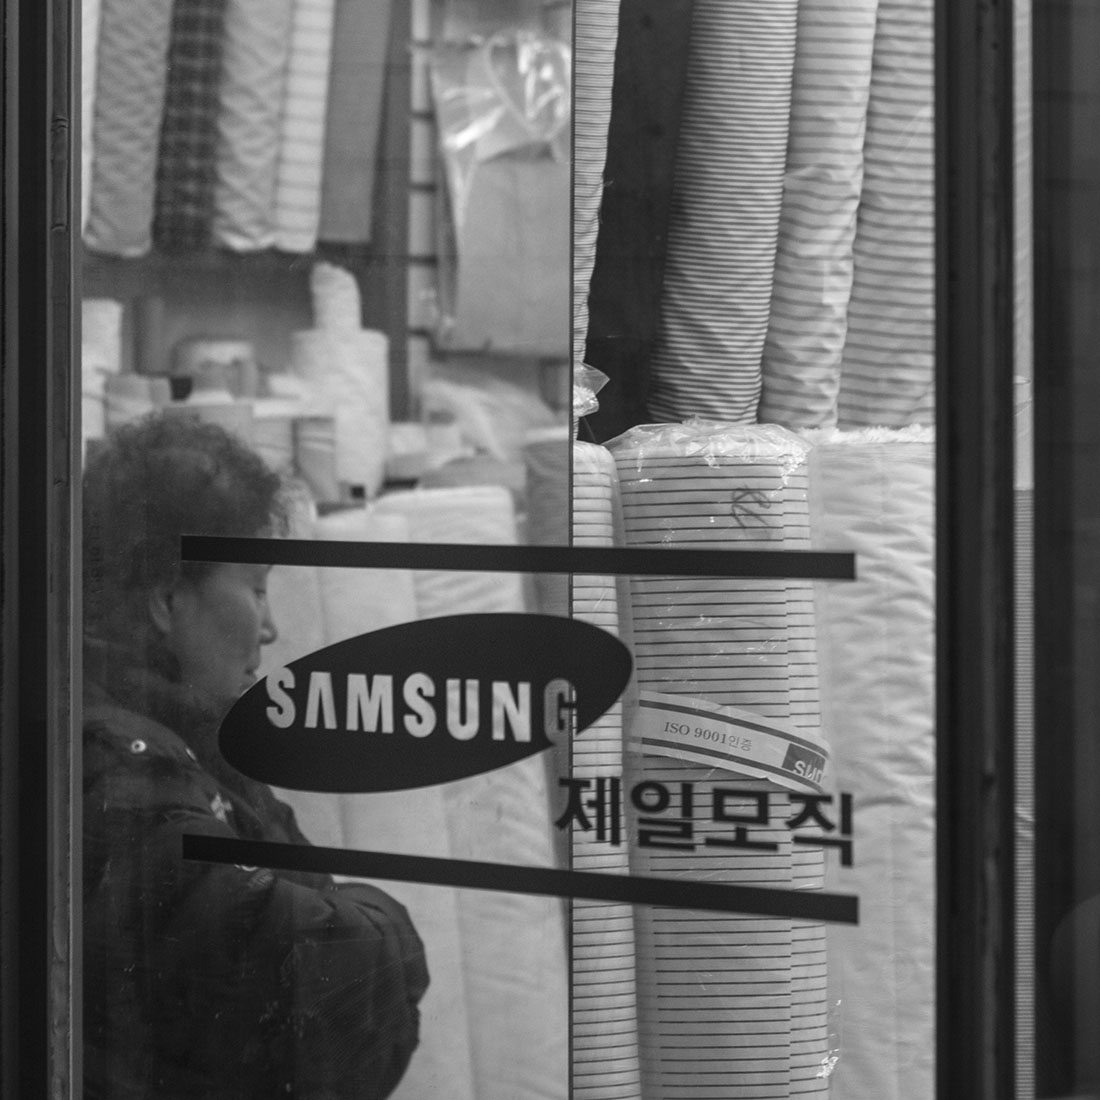 Femme coréenne derrière une vitrine samsung, photographie, hiver